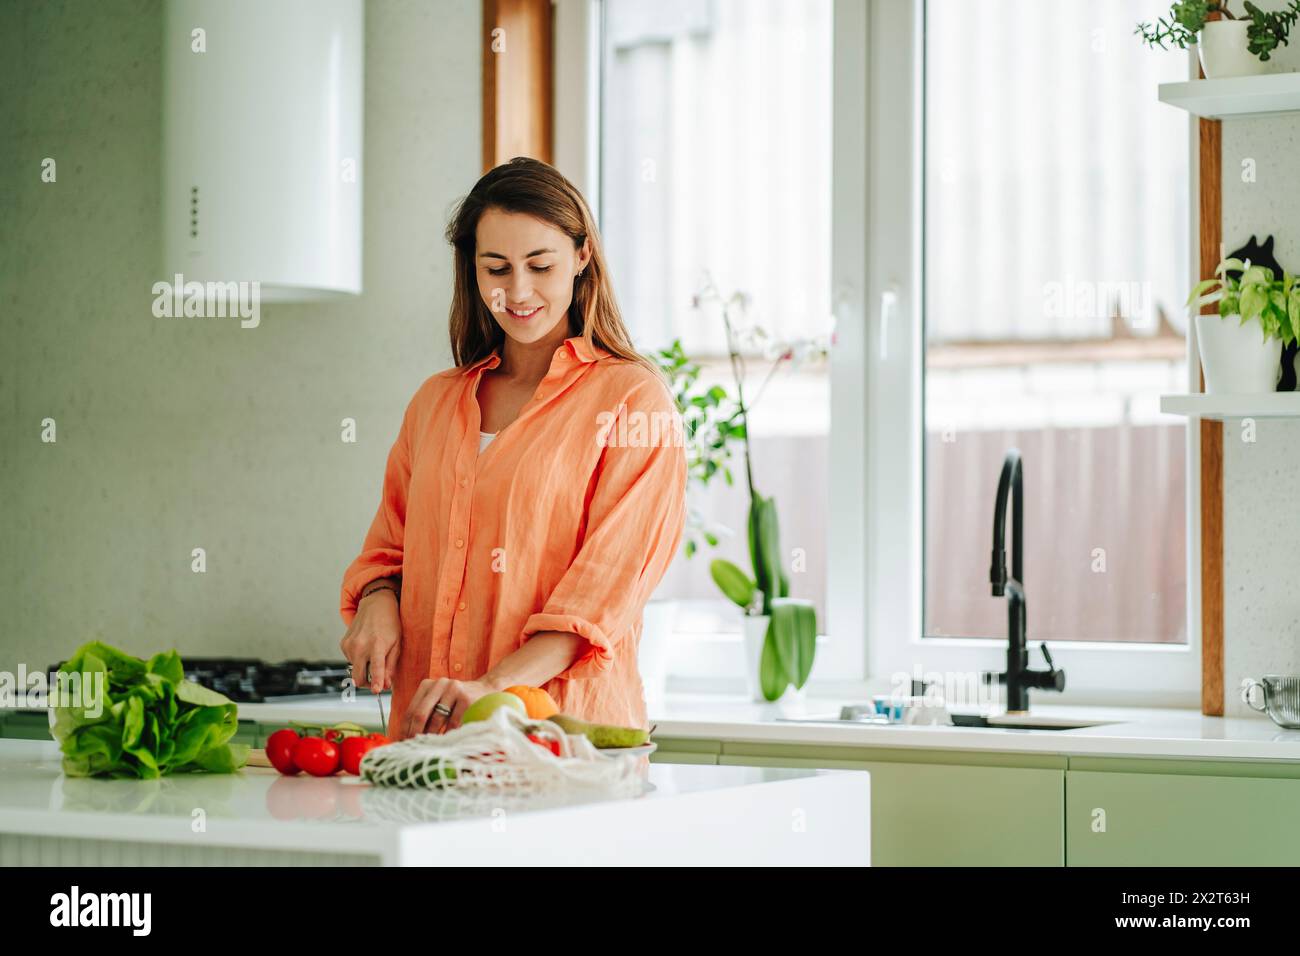 Frau, die zu Hause auf der Kücheninsel Obst hackt Stockfoto